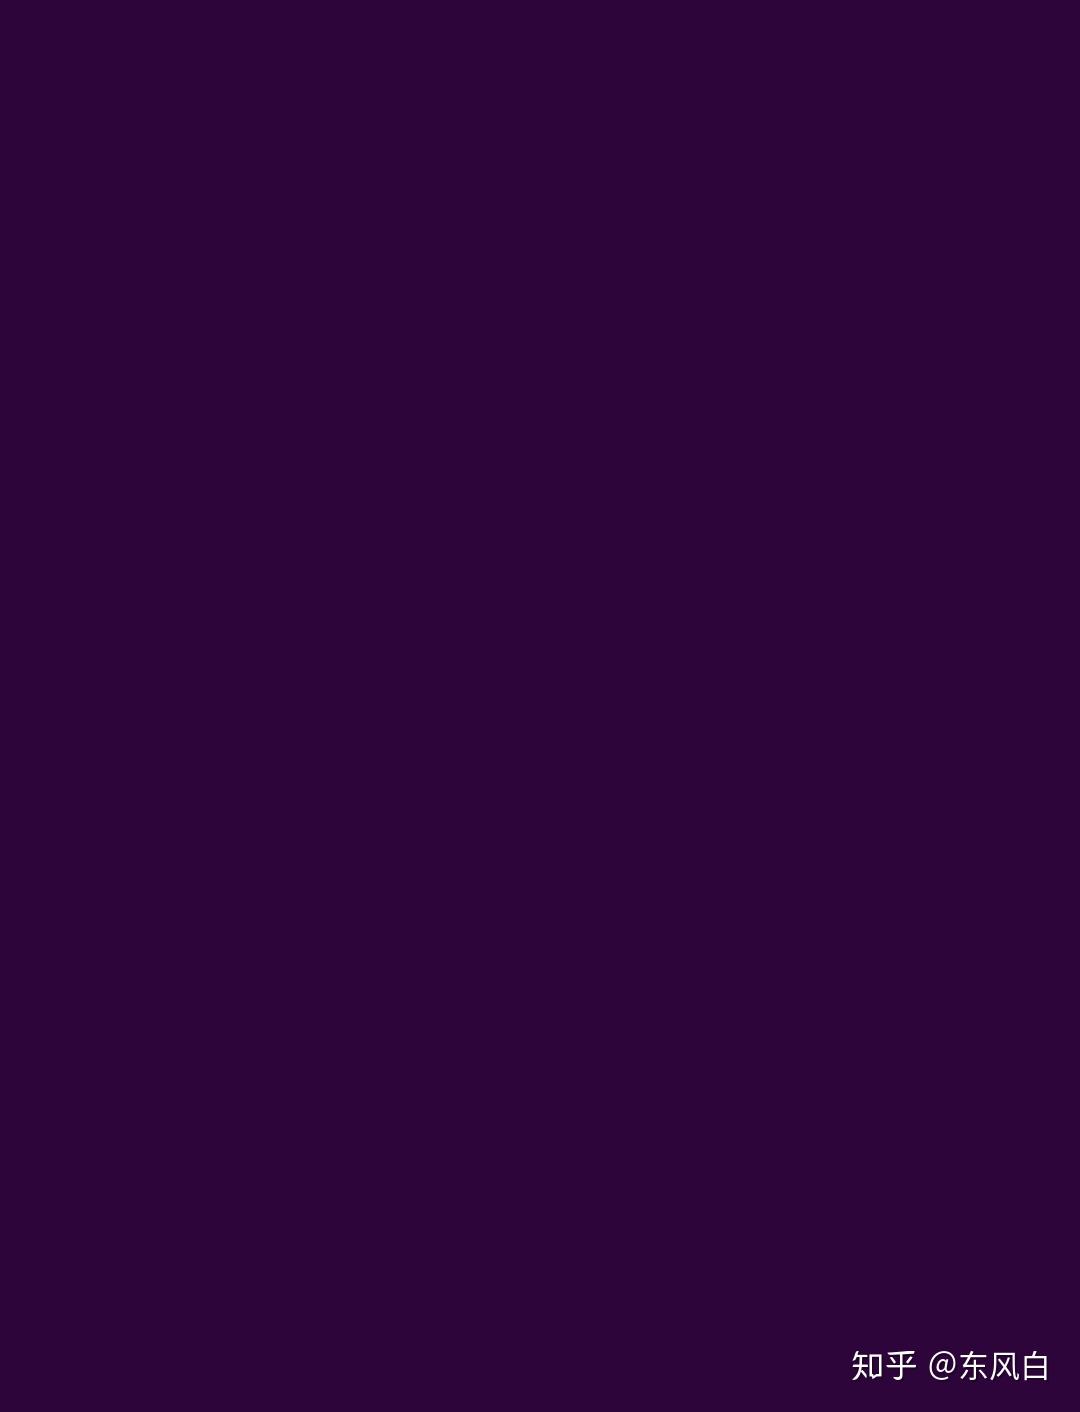 纯色的背景图 真的是 纯色哦 主色调是purple和blue的纯色壁纸 纯紫色背景图片纯色 柏然网